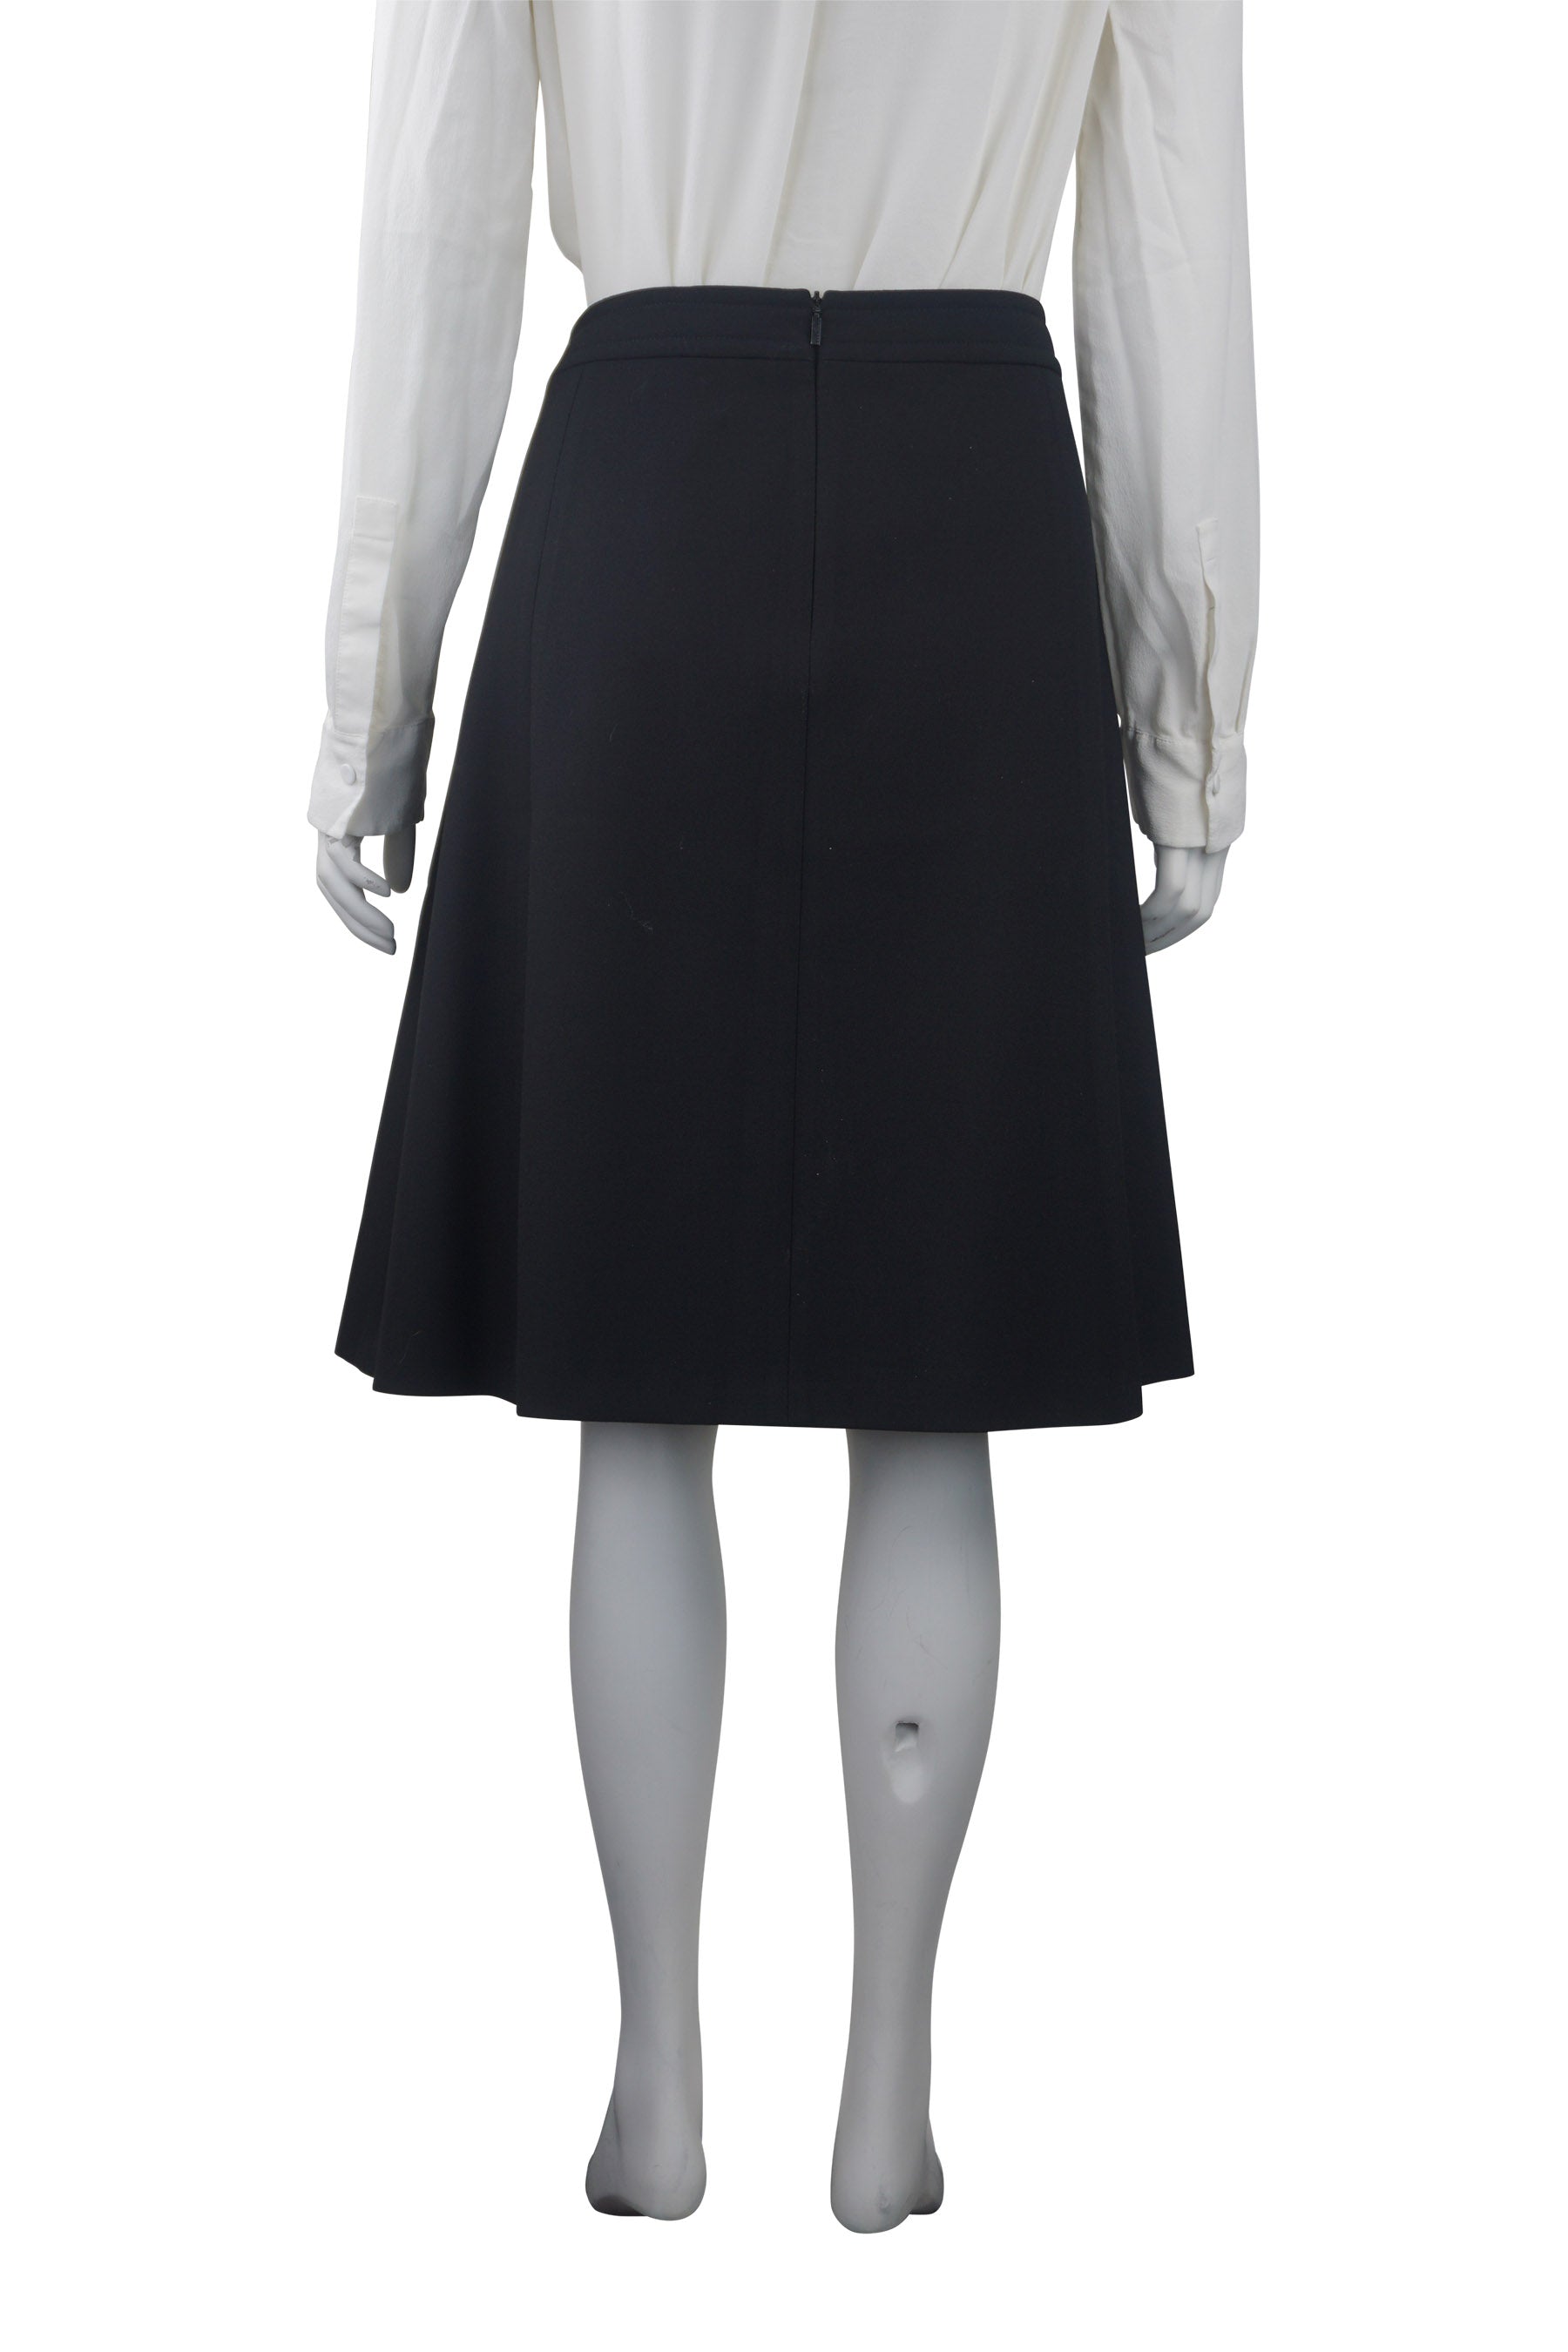 Hugo Boss A-line black skirt – Revoir